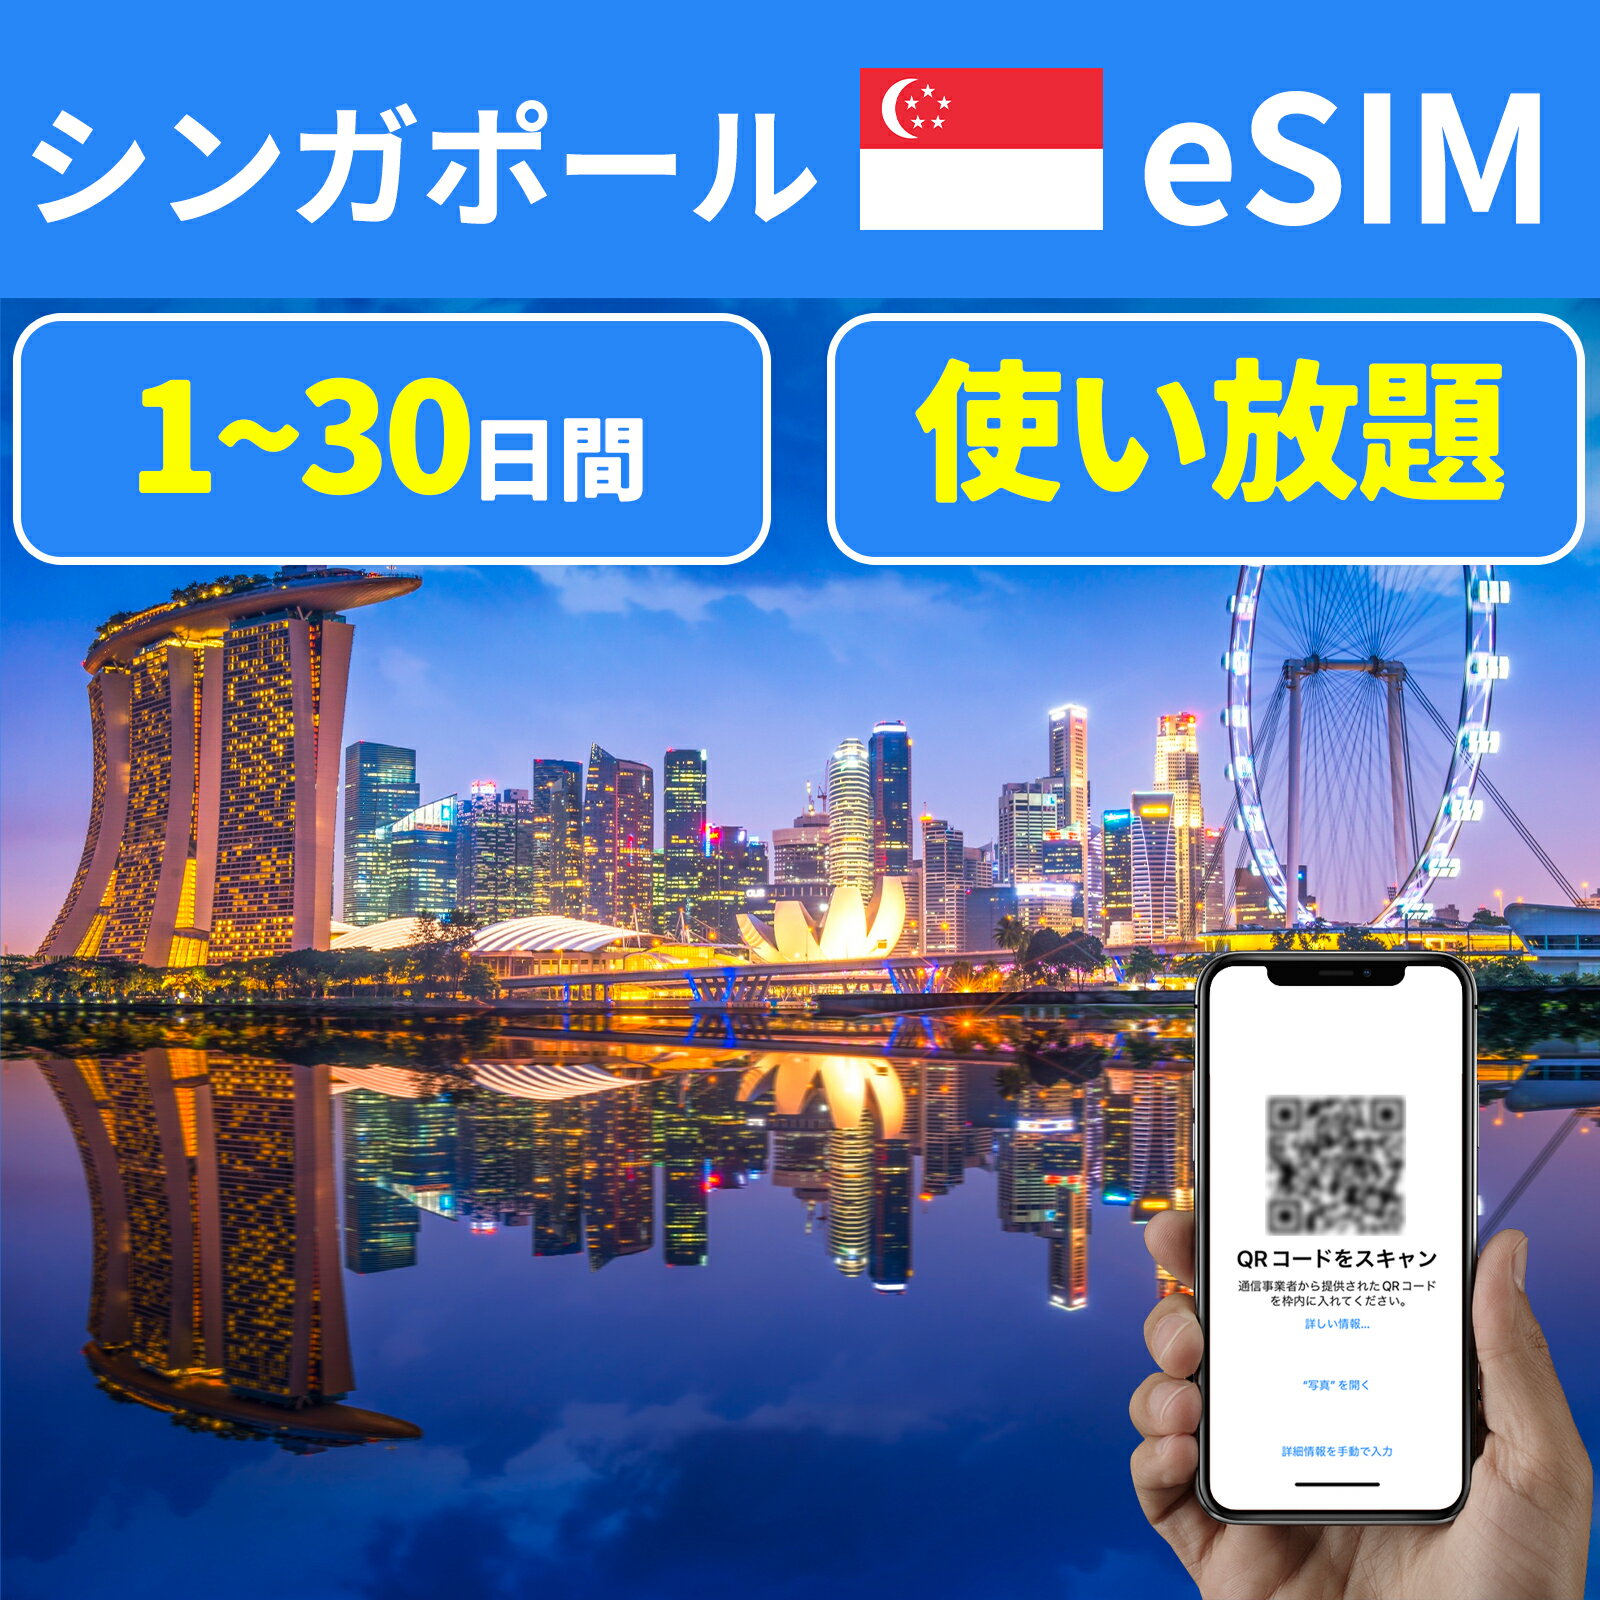 商品情報 商品名 eSIM シンガポール 1日間 3日間 5日間 7日間 10日間 15日間 20日間 30日間 データ無制限 SIMタイプ eSIM 使用可能日数 1日間 3日間 5日間 7日間 10日間 15日間 20日間 30日間 データ容量 高速データ無制限 対応地域 シンガポール Can be used in the following regions: Singapore 注意事項 電話およびSMSの機能がありません。30日以内に携帯電話に読み込んでください。それ以降は期限切れとなります。 購入されたデータパッケージは、eSIMがデバイスにインストールされると自動的にアクティブ化されます。 対応地域でのみアクティブにすることができます。海外に行く1日前にeSIMコードをスキャンすることをお勧めいたします。 ご注意：eSIM通信プランに日本が含まれている場合、日本で設定とアクティベート当日に時間がカウントされます。